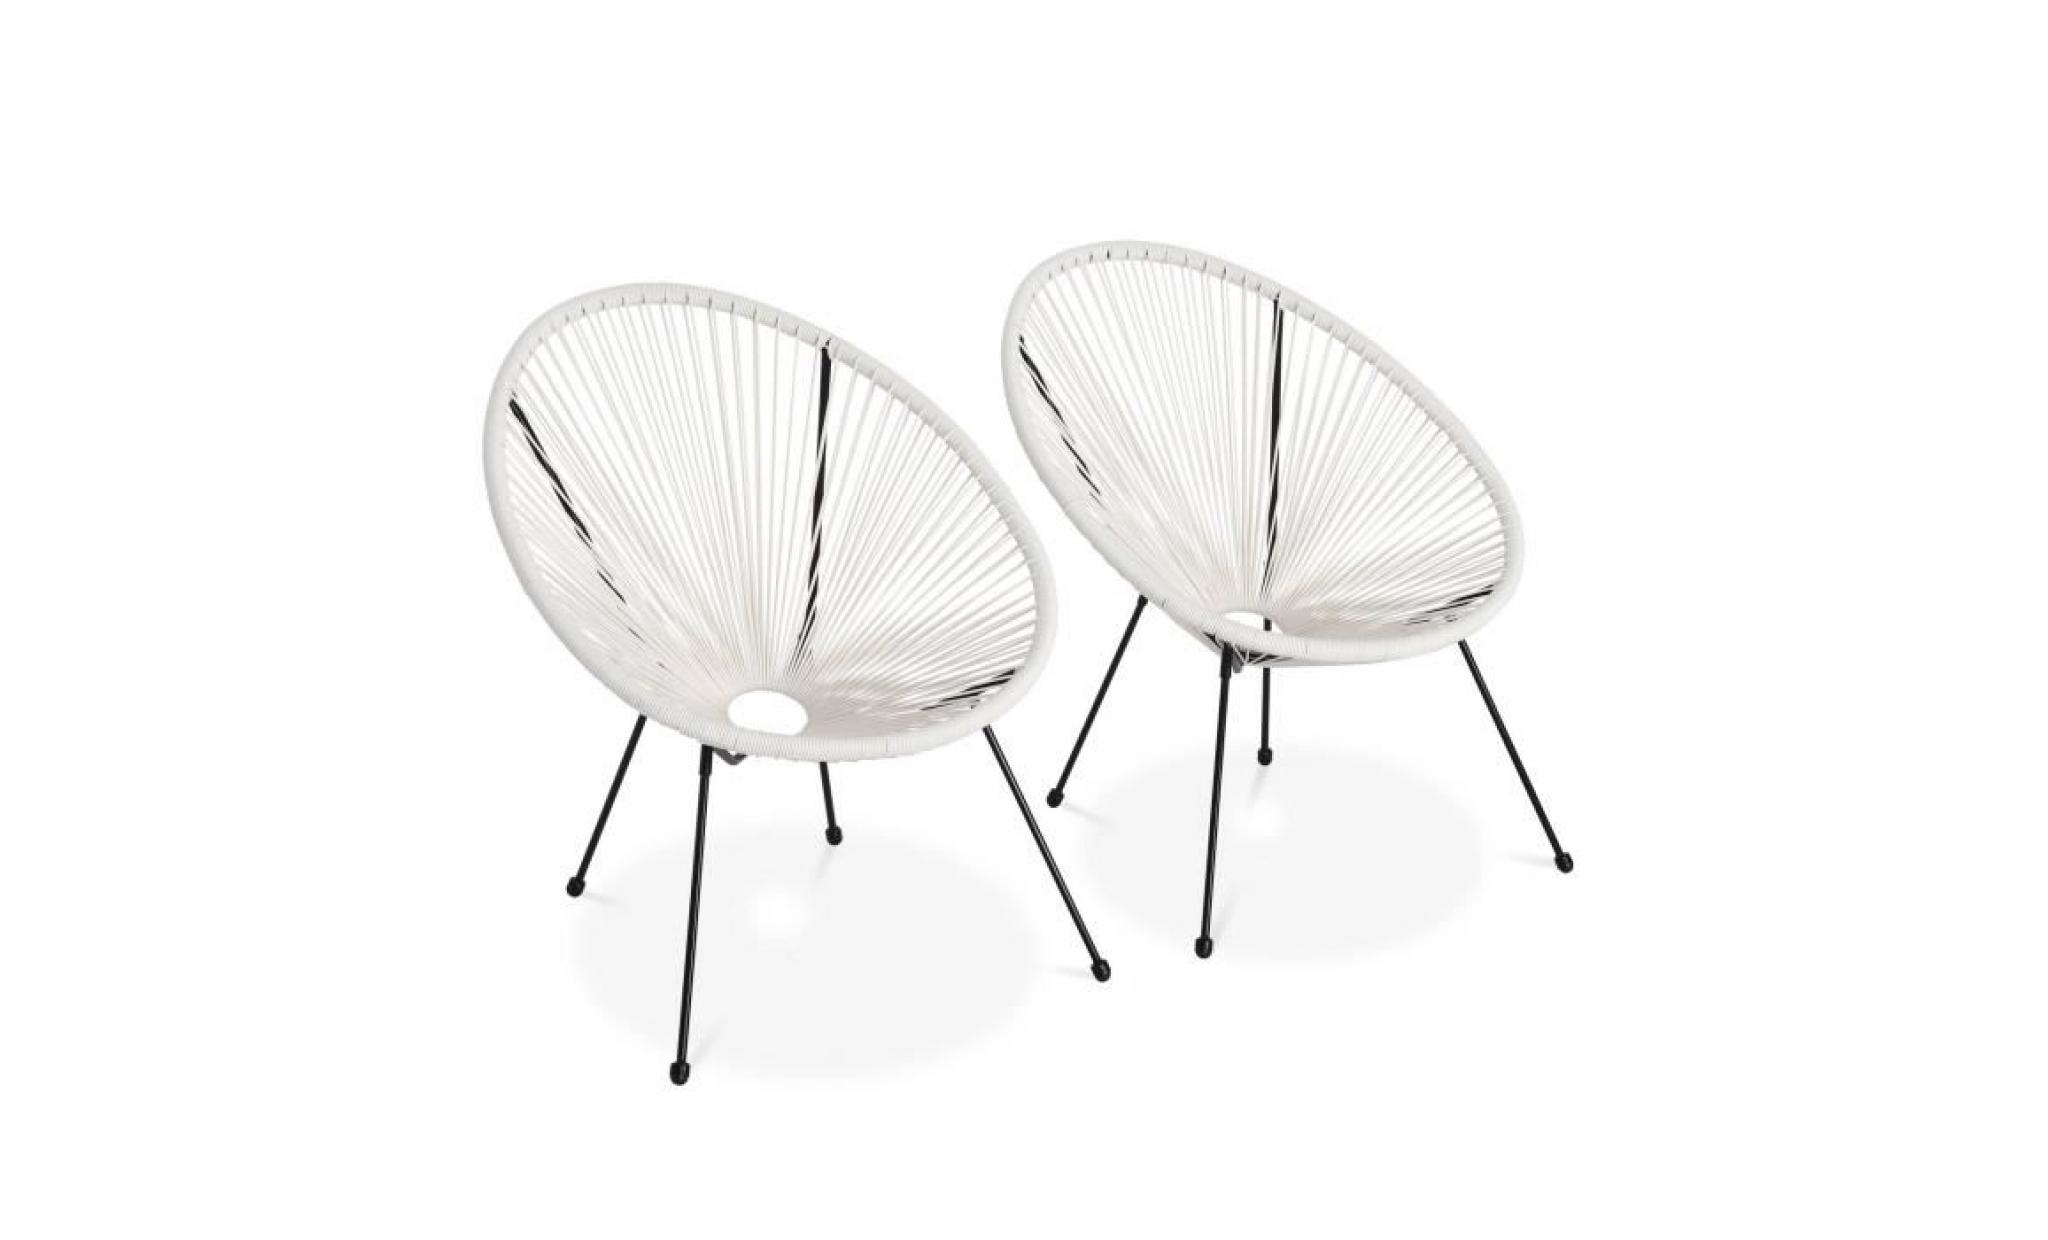 lot de 2 fauteuils design oeuf   acapulco blanc   fauteuils 4 pieds design rétro, cordage plastique, intérieur / extérieur